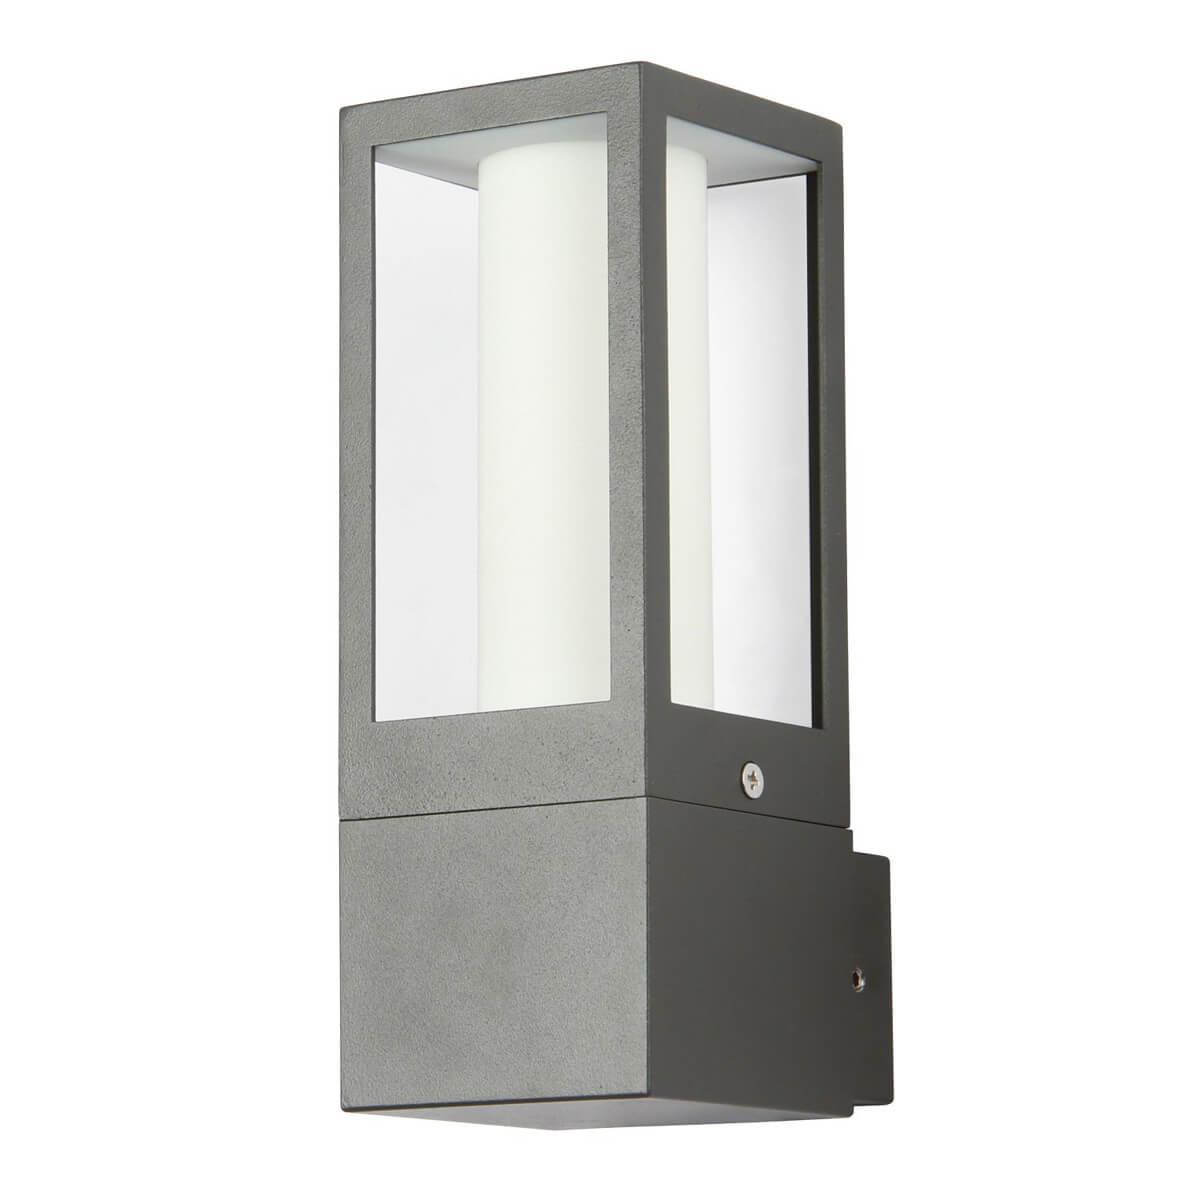 Уличный настенный светильник Favourite Later 3035-1W потолочный светодиодный светильник imex plc 3035 500